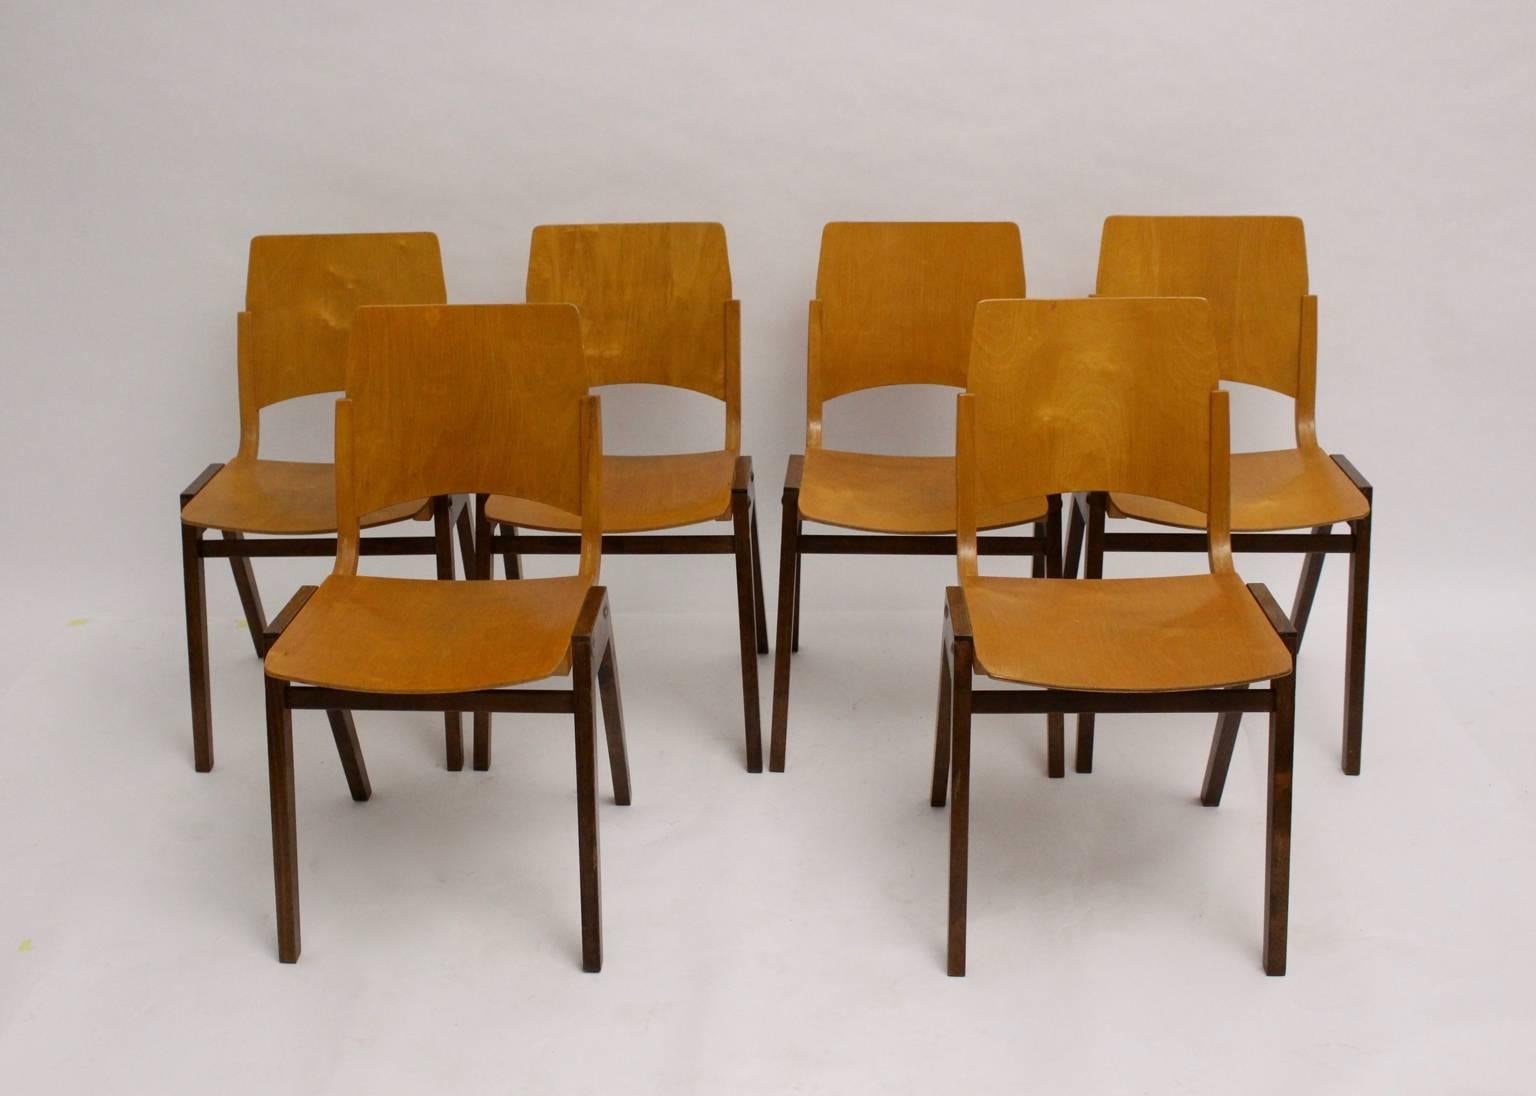 Chaises ou chaises de salle à manger au design intemporel de style Mid Century Modern conçues par Roland Rainer pour la Stadthalle de Vienne en 1952.
Exécuté par Emil & Alfred Pollak, Vienne
Base en bois de hêtre massif et teinté en brun
L'assise et